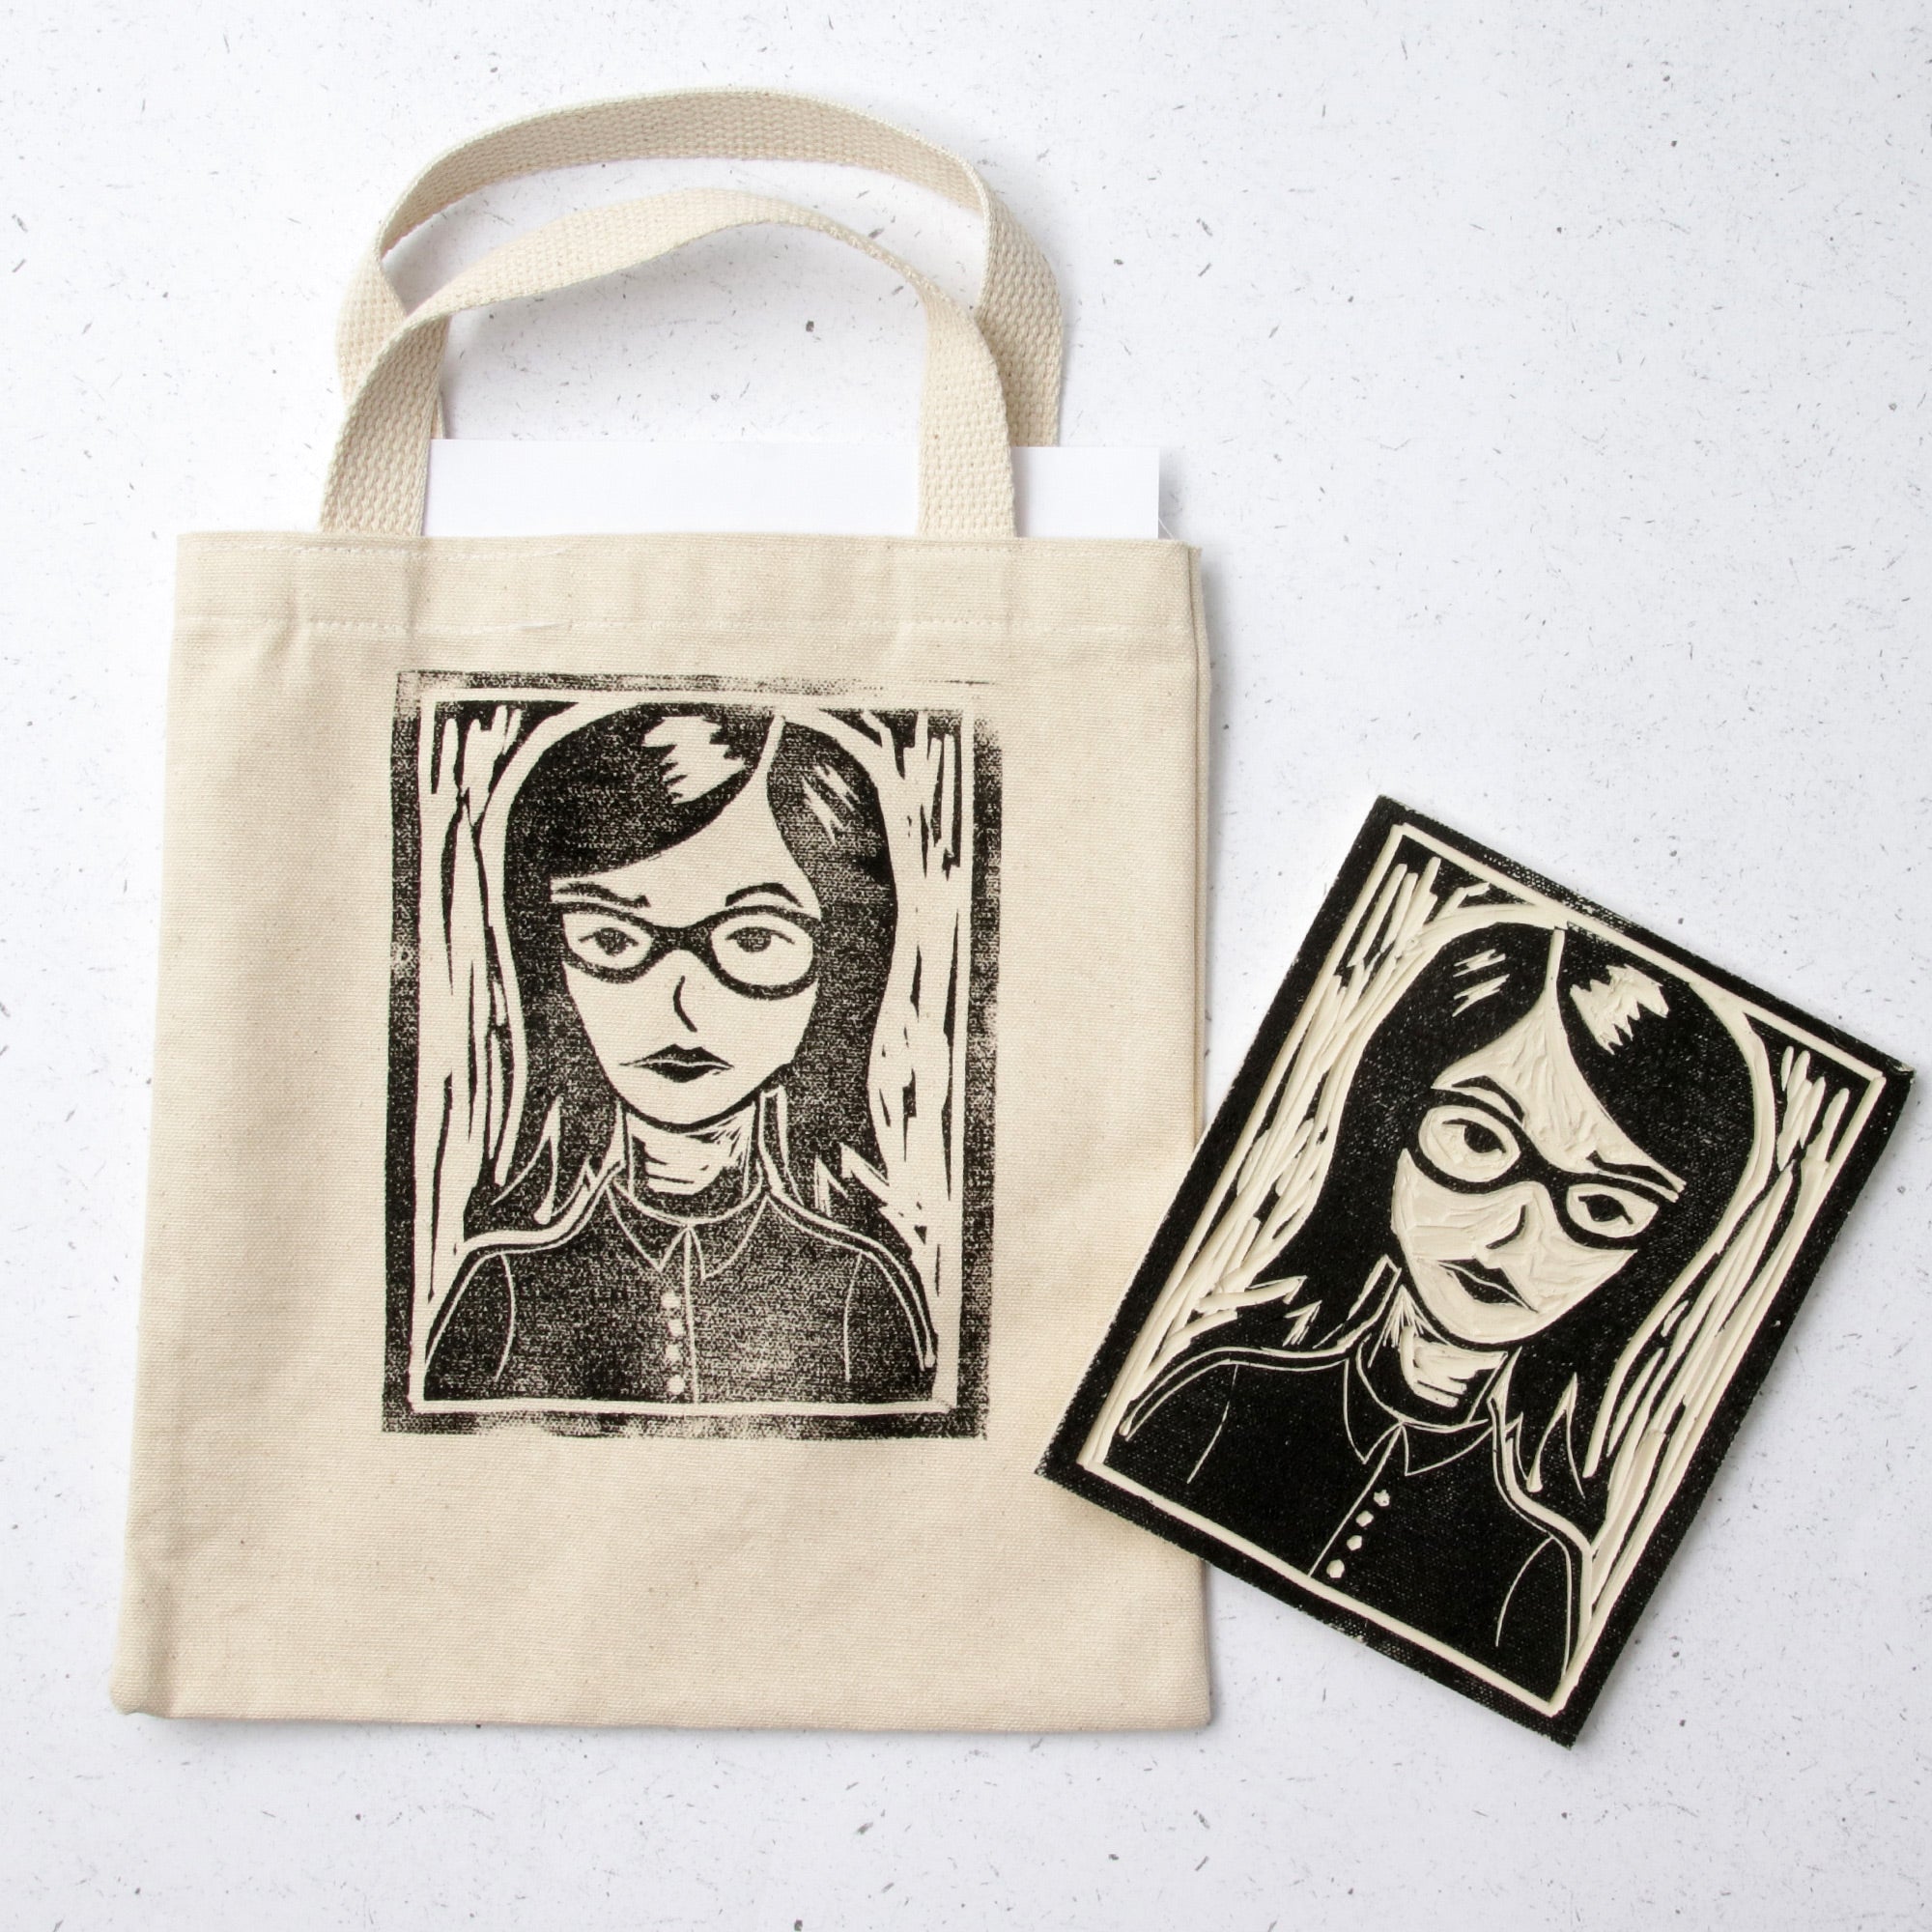 Self-Portrait Block-Printed Bag